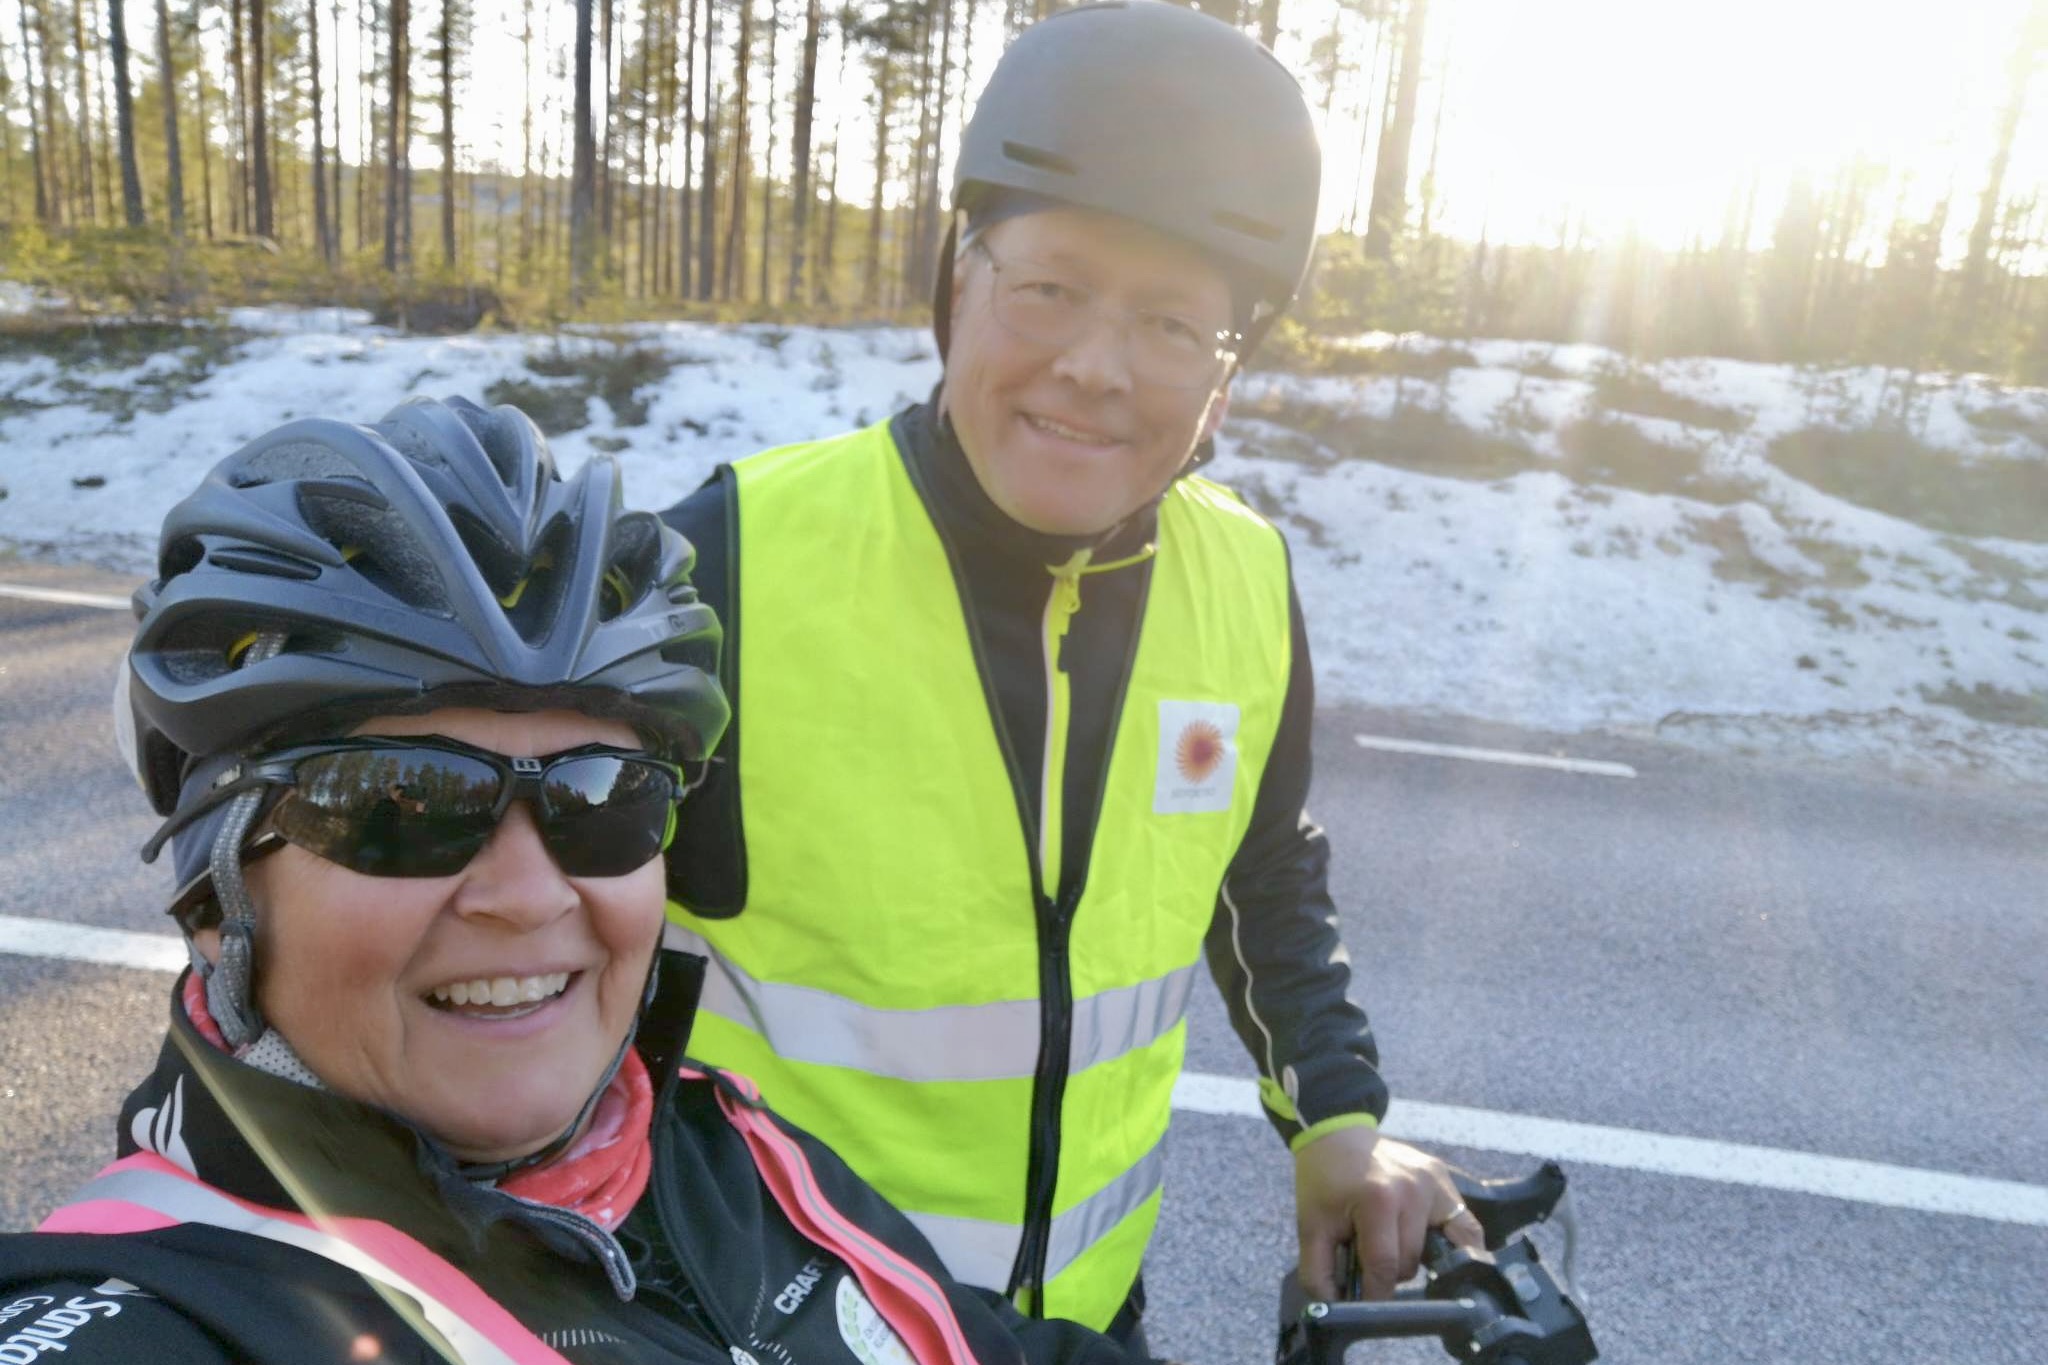 I sommar ska Line och maken Jonny cykla Vätternrundan tillsammans för Cykelprojektet. Här är duon under säsongens första cykeltur i april.